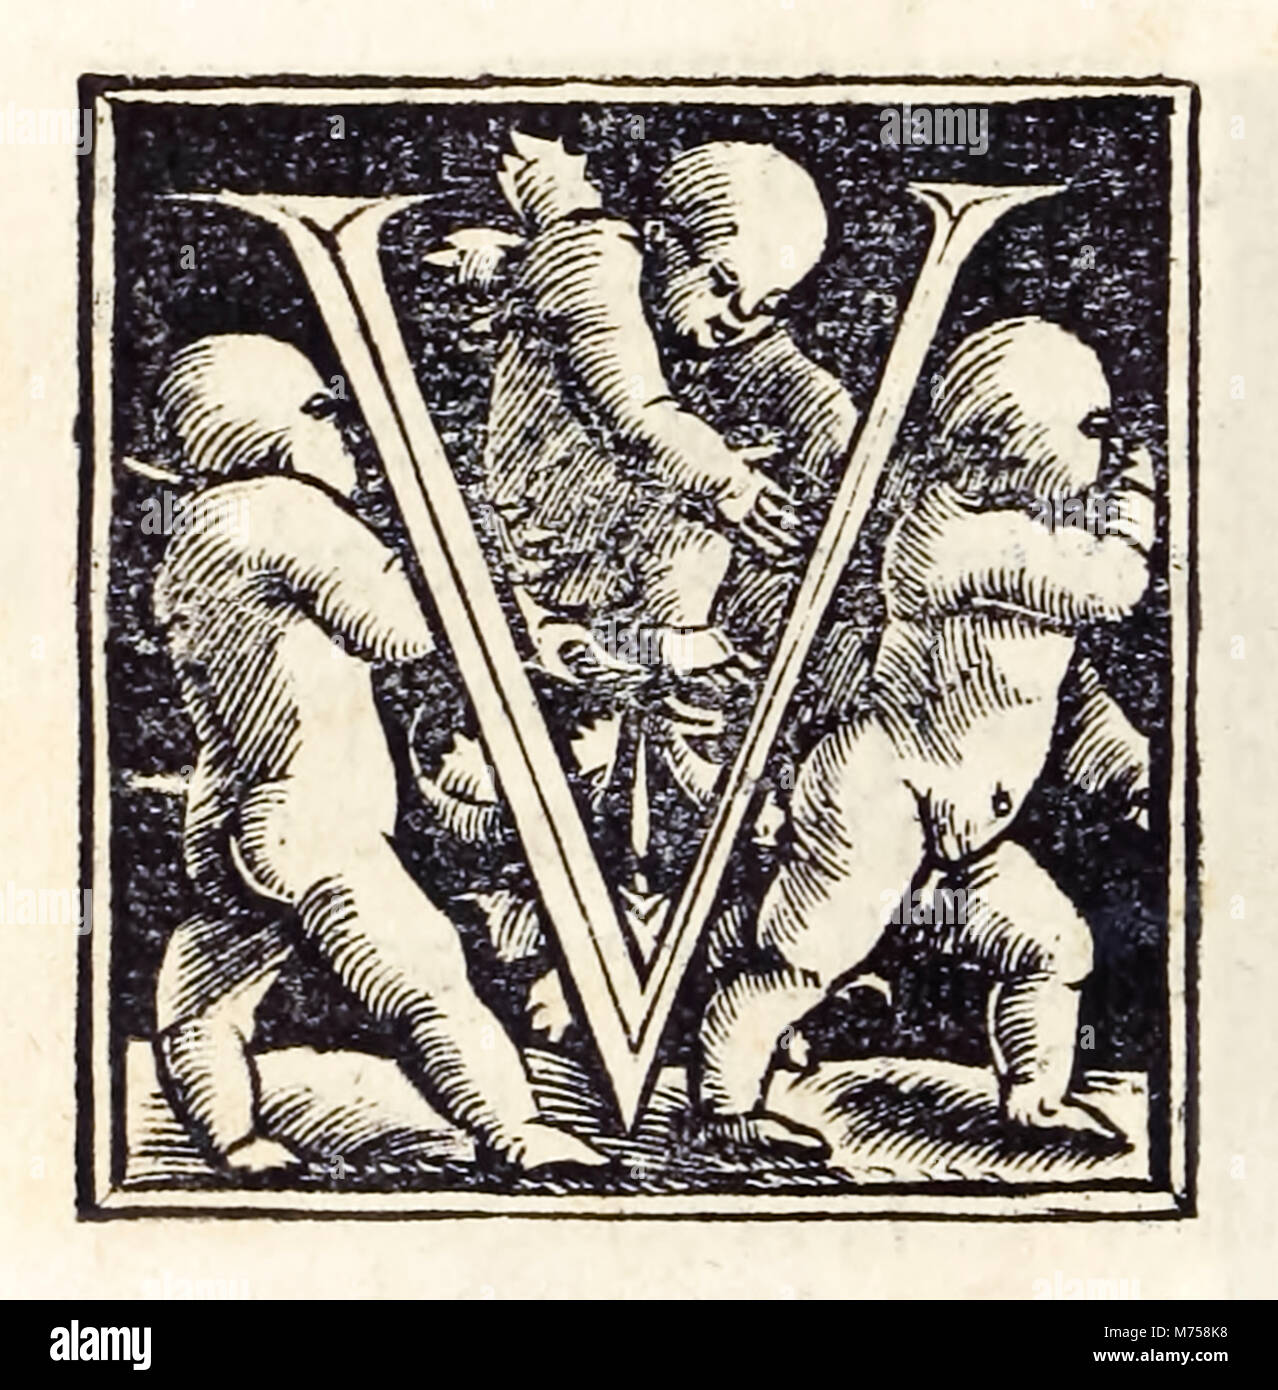 Accesa a 'V' dal 1518 Basilea terza edizione di "Utopia" da Sir Thomas More (1478-1535) pubblicato per la prima volta nel 1516. Xilografia di Hans Holbein il Giovane (c.1497-1543). Vedere ulteriori informazioni qui di seguito. Foto Stock